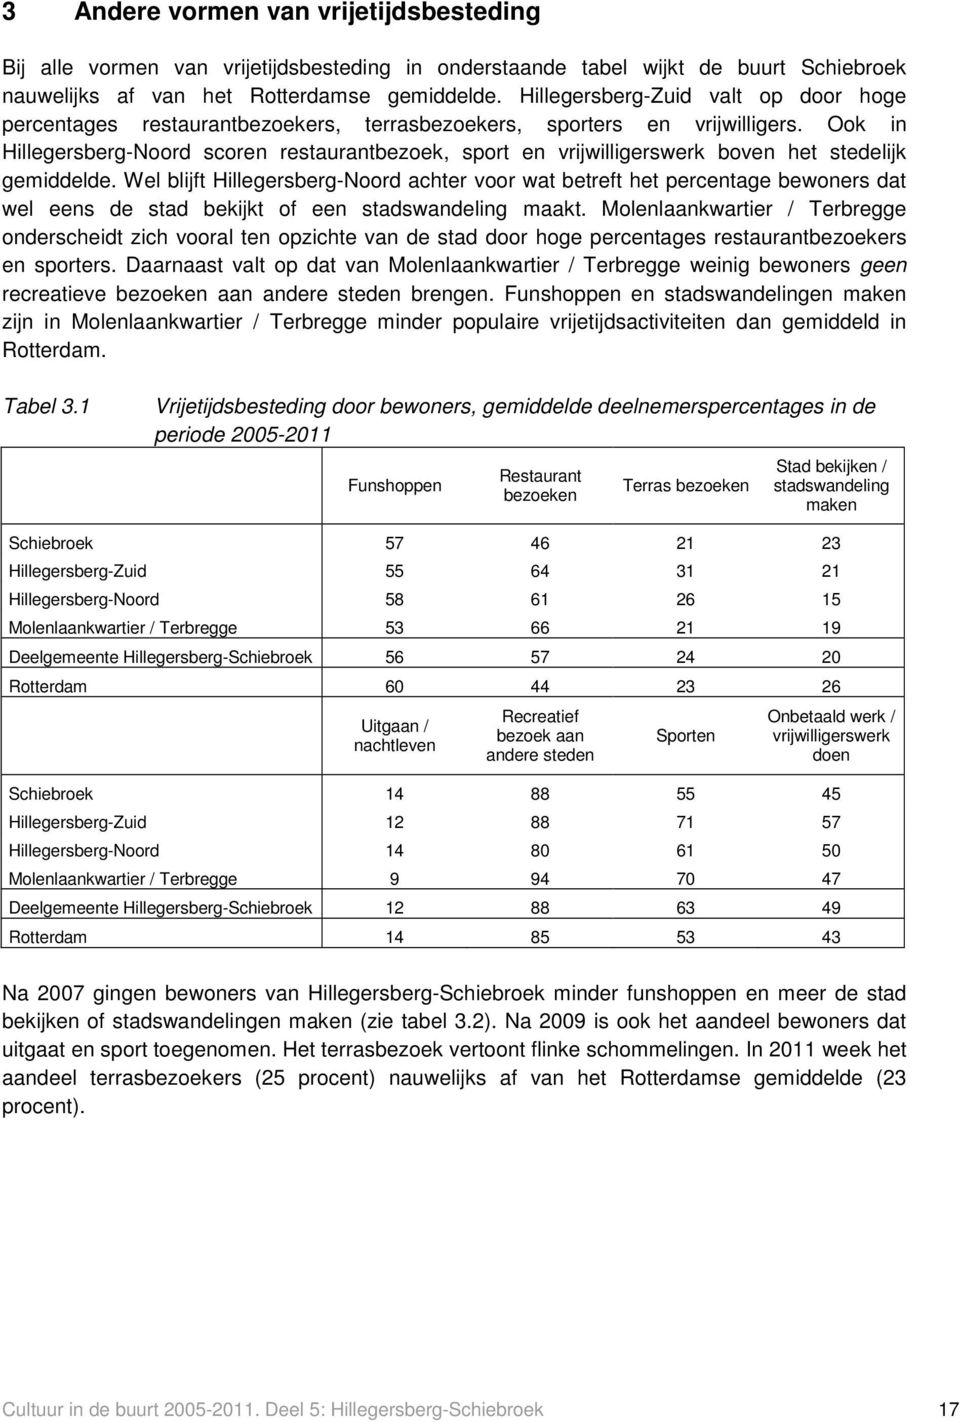 Ook in Hillegersberg-Noord scoren restaurantbezoek, sport en vrijwilligerswerk boven het stedelijk gemiddelde.